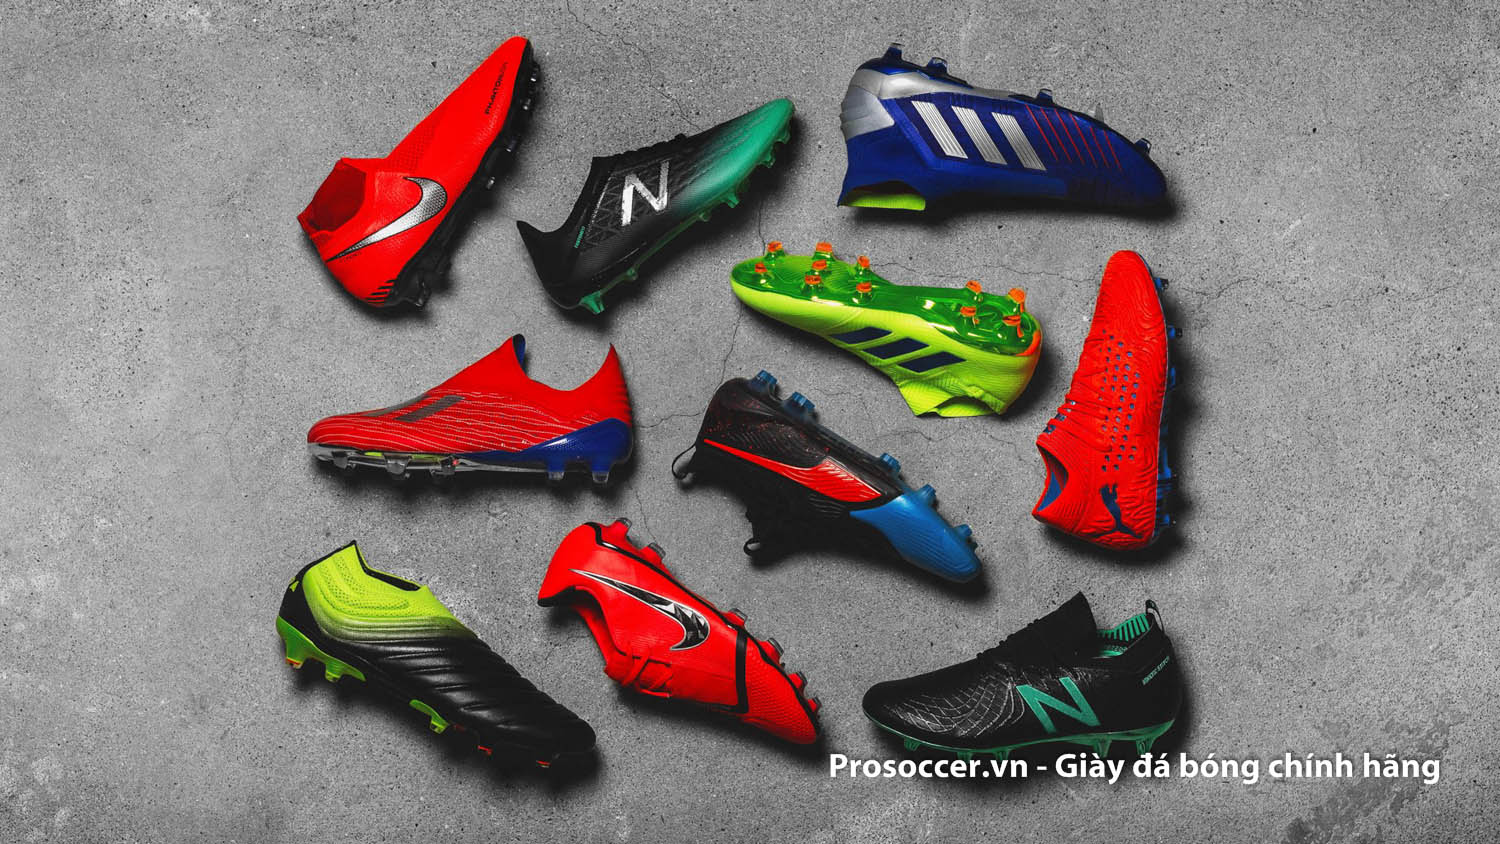 Có rất nhiều thương hiệu giày bóng đá chính hãng ở Việt Nam